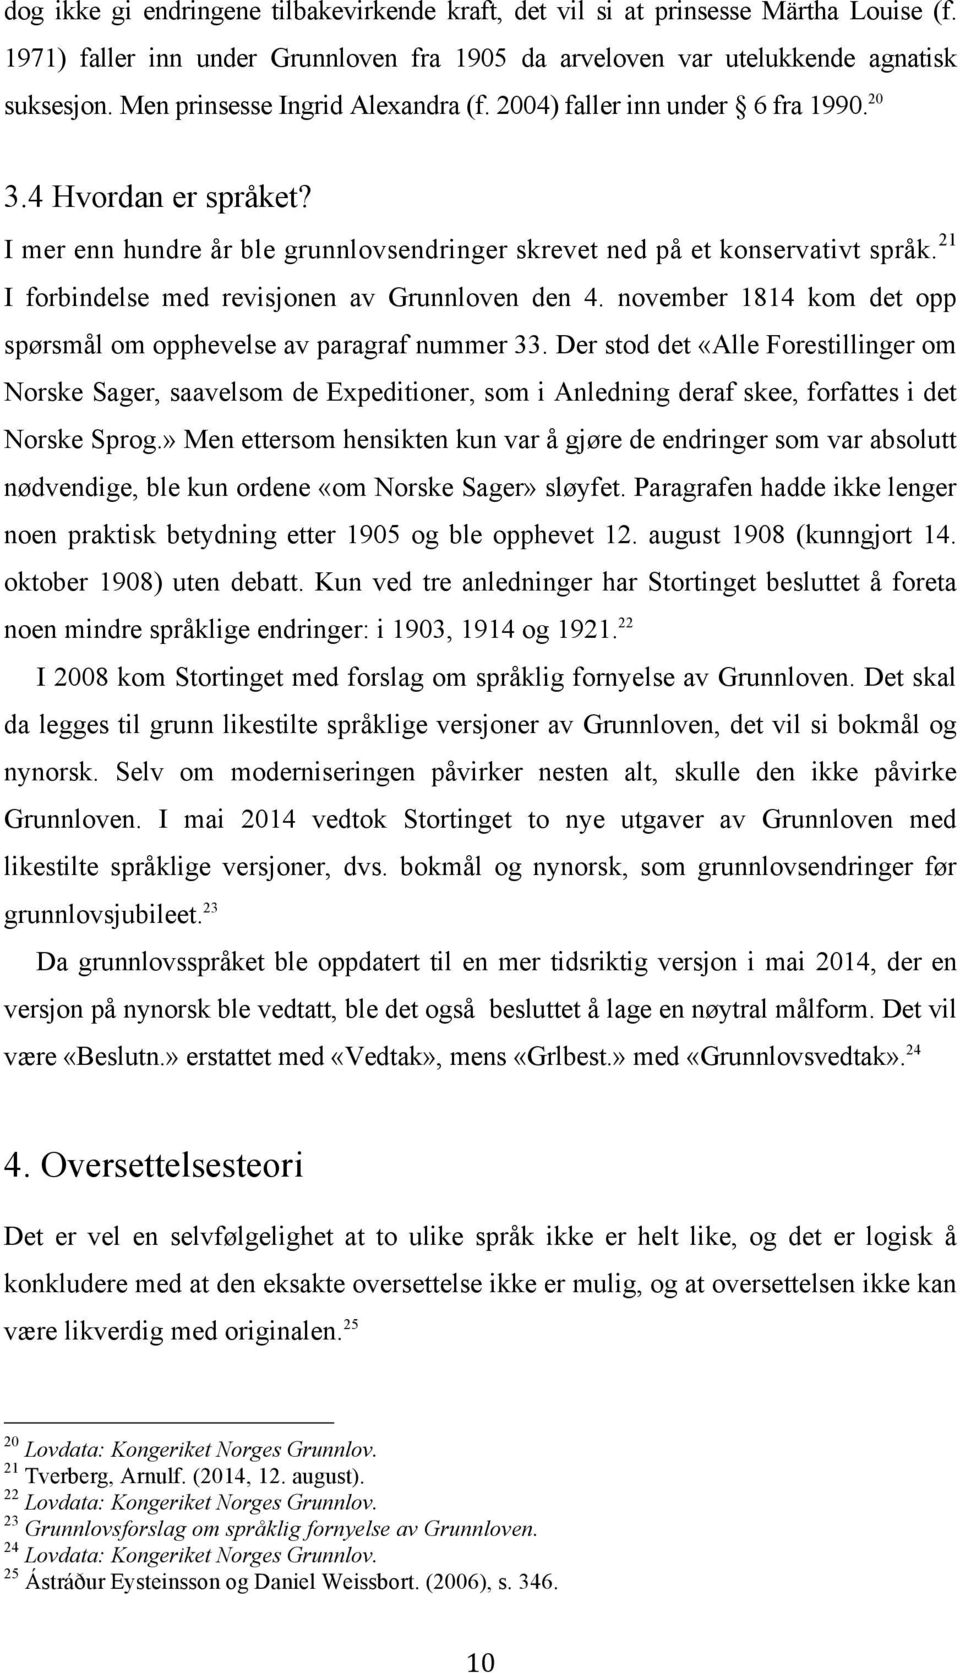 21 I forbindelse med revisjonen av Grunnloven den 4. november 1814 kom det opp spørsmål om opphevelse av paragraf nummer 33.